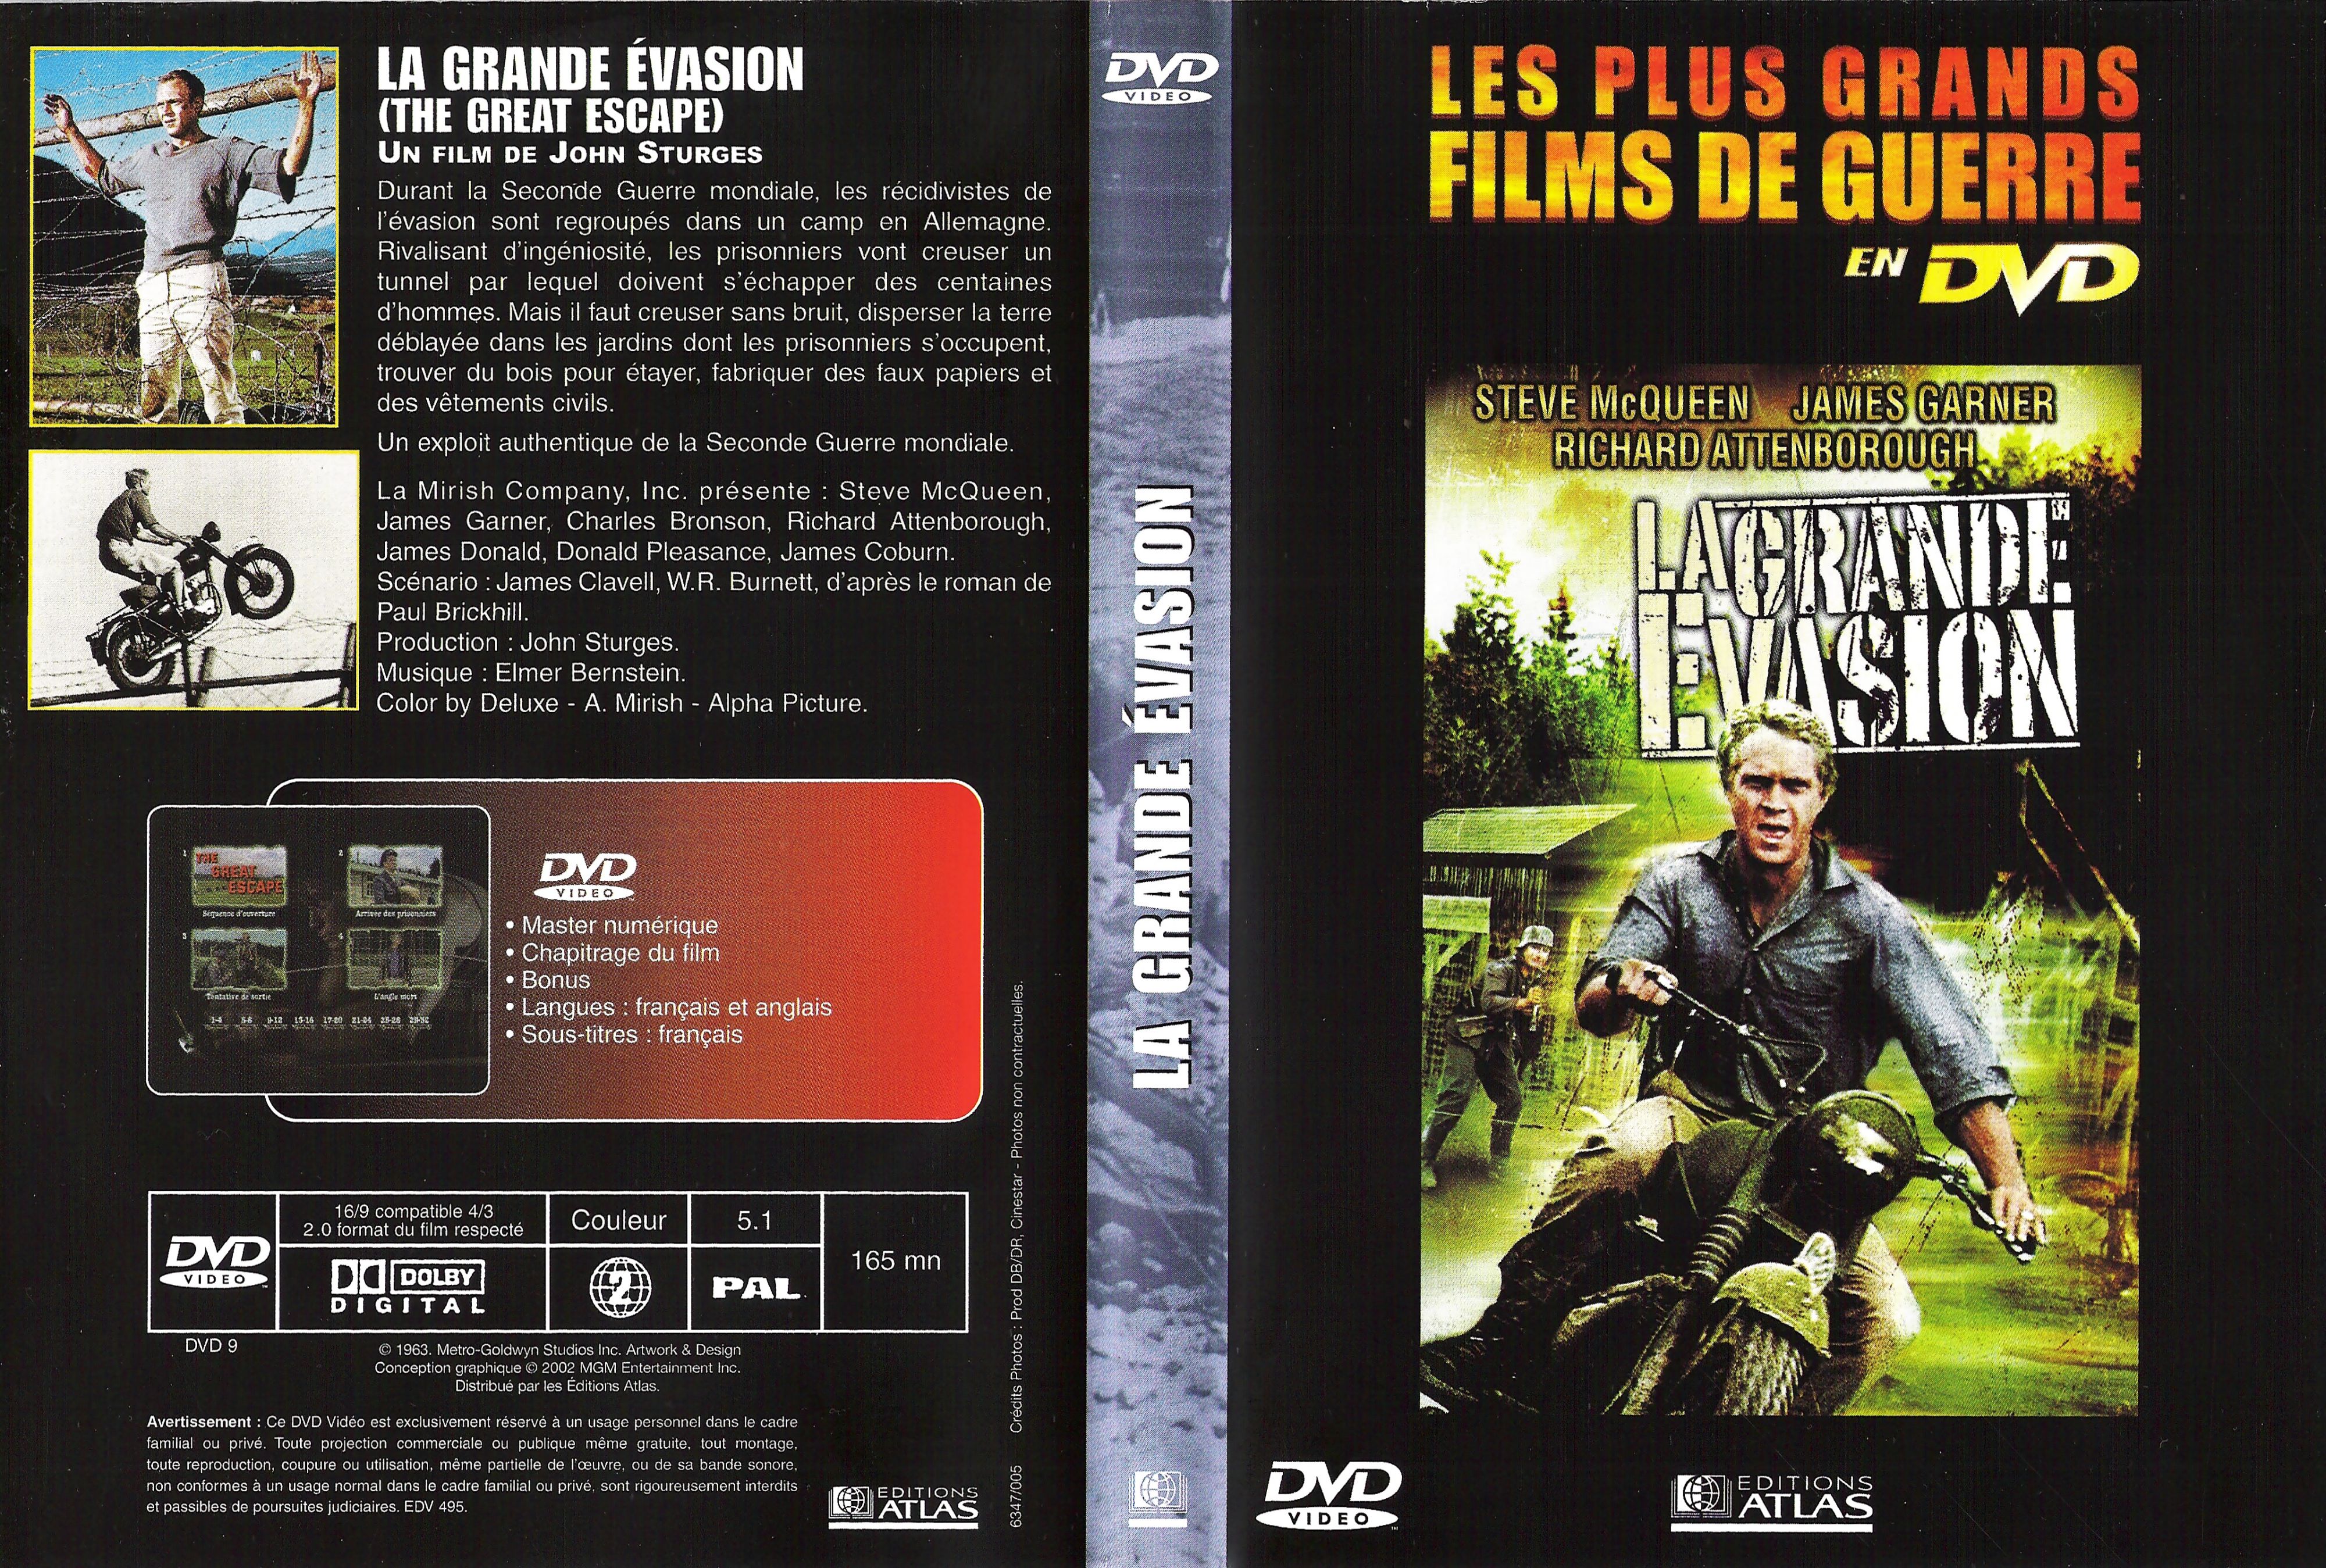 Jaquette DVD La grande evasion v2